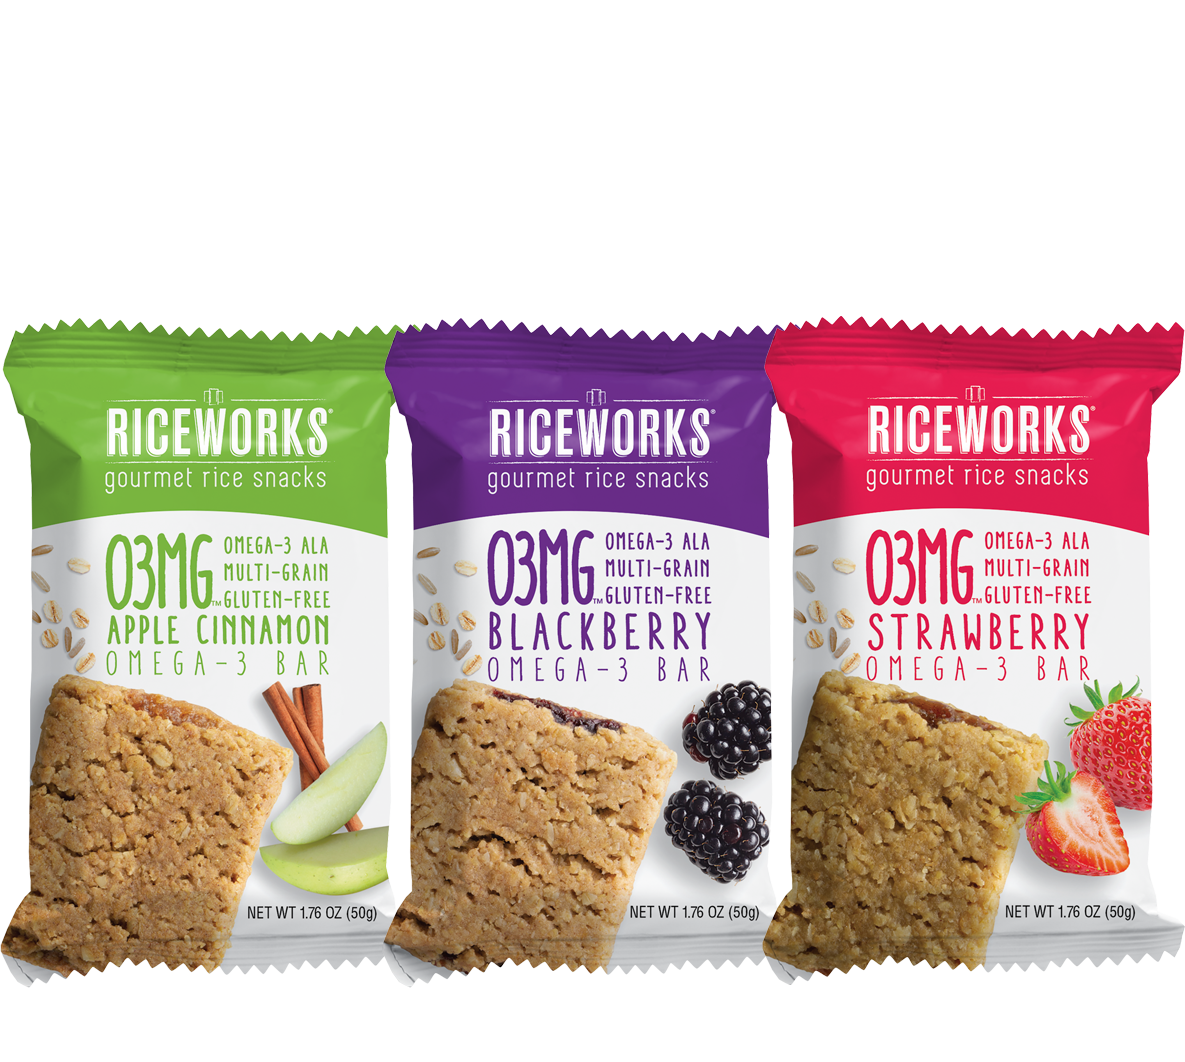 O3MG - Omega-3 ALA, Gluten-Free, Multi-Grain - Omega-3 Bars